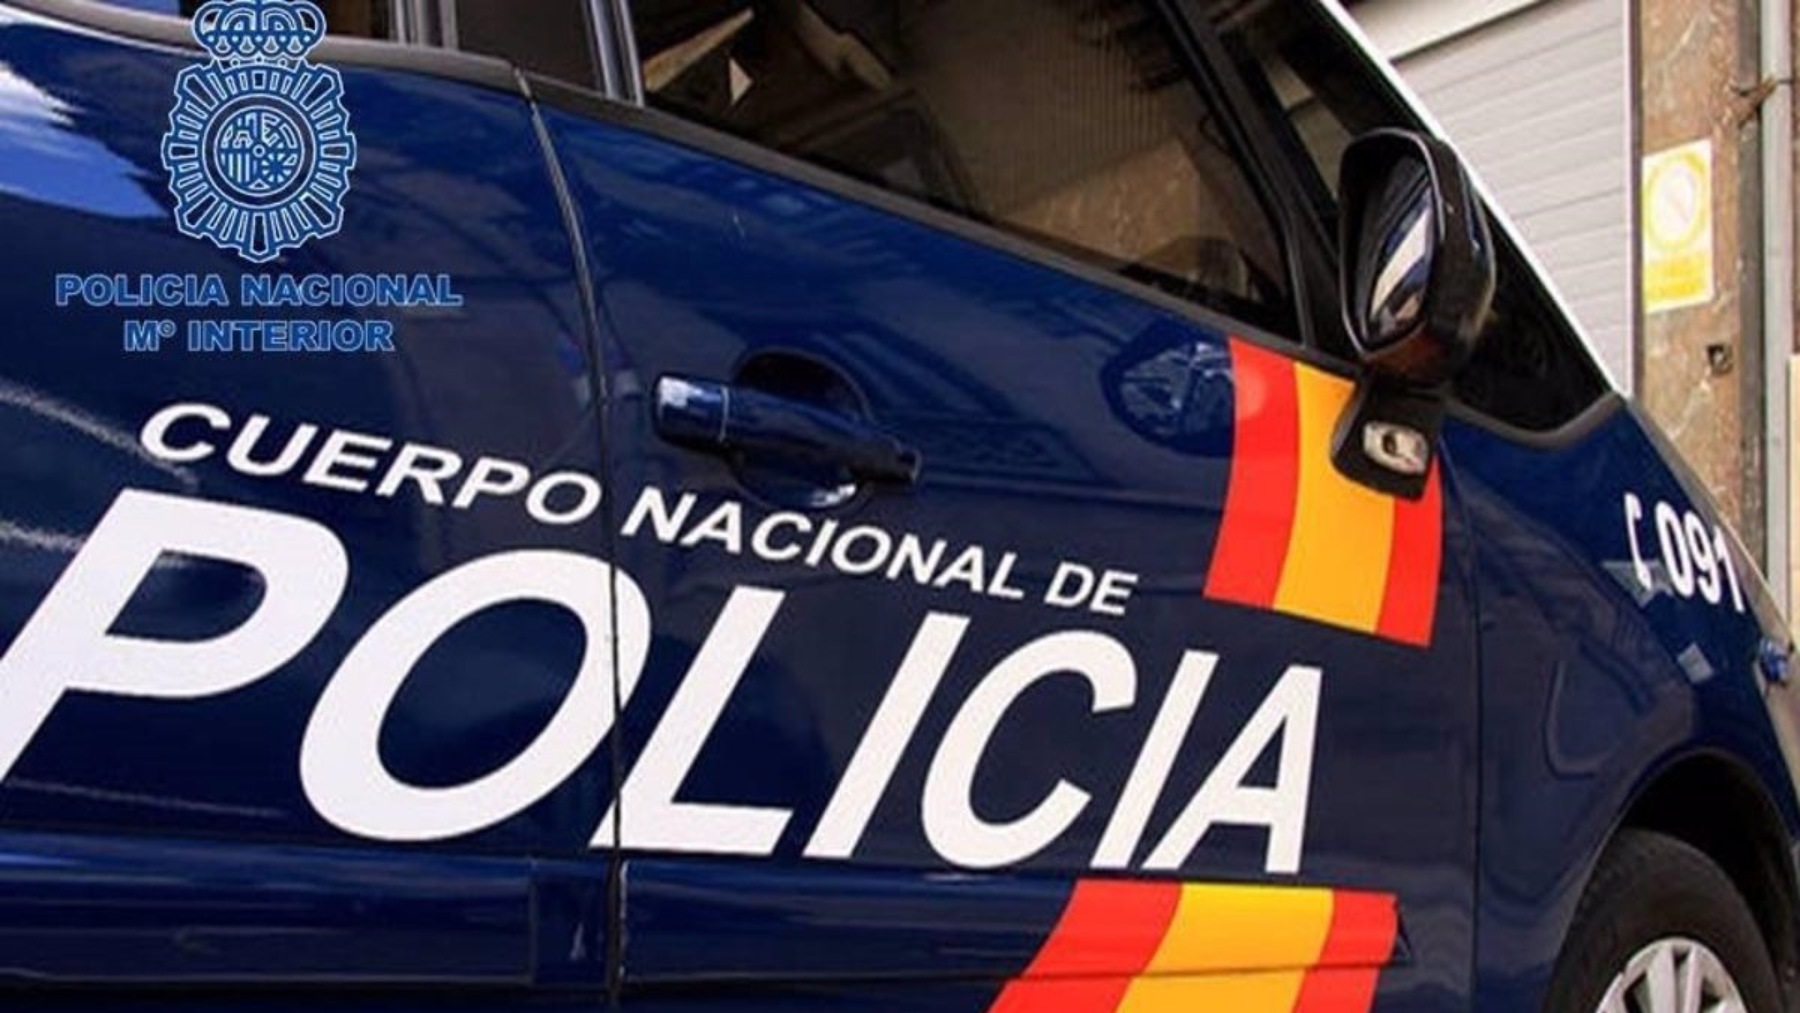 Coche de policía Nacional (EP)